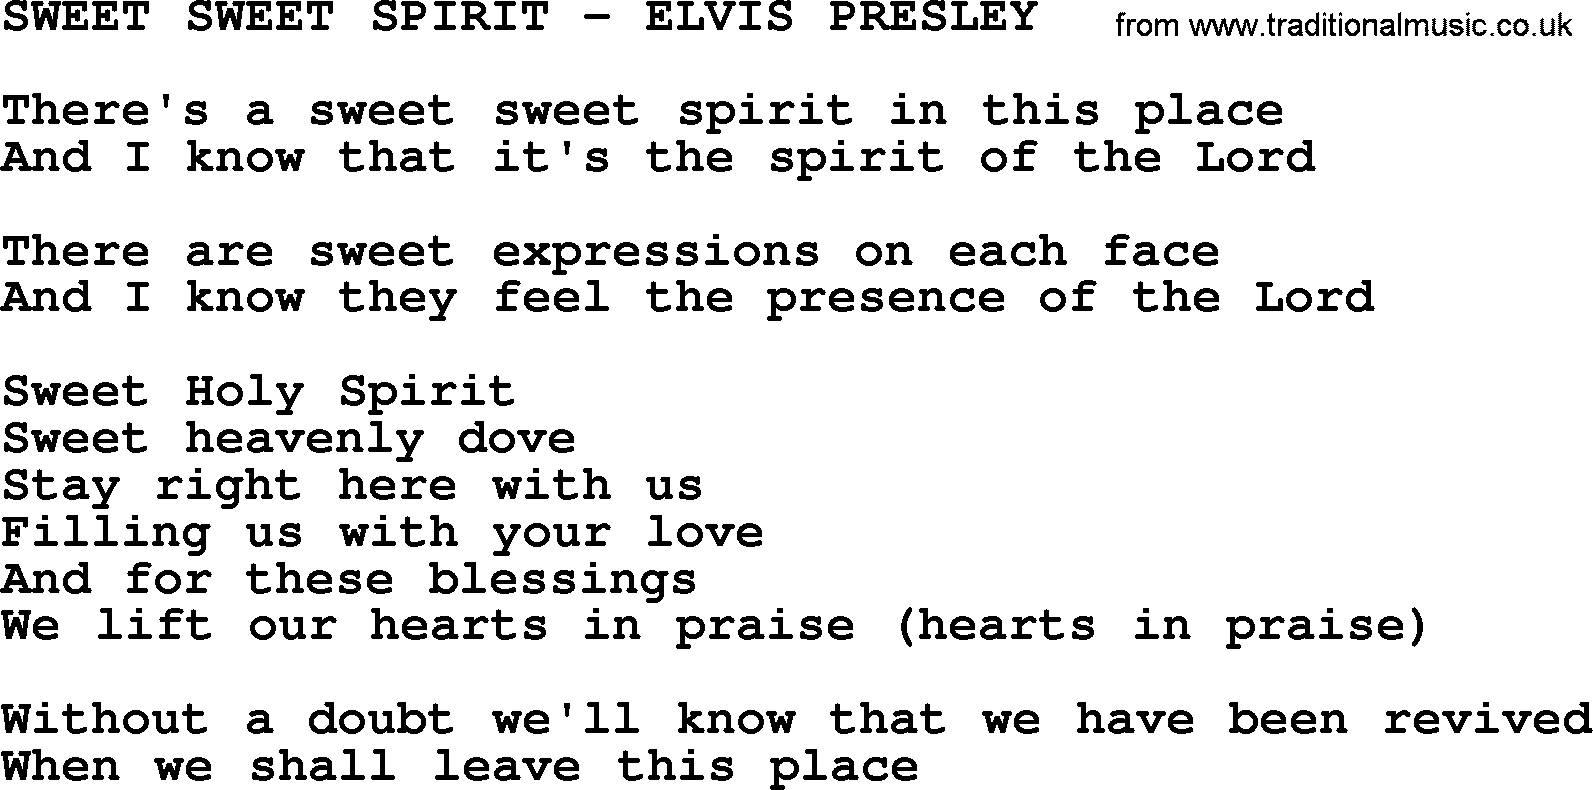 Elvis Presley song: Sweet Sweet Spirit-Elvis Presley-.txt lyrics and chords